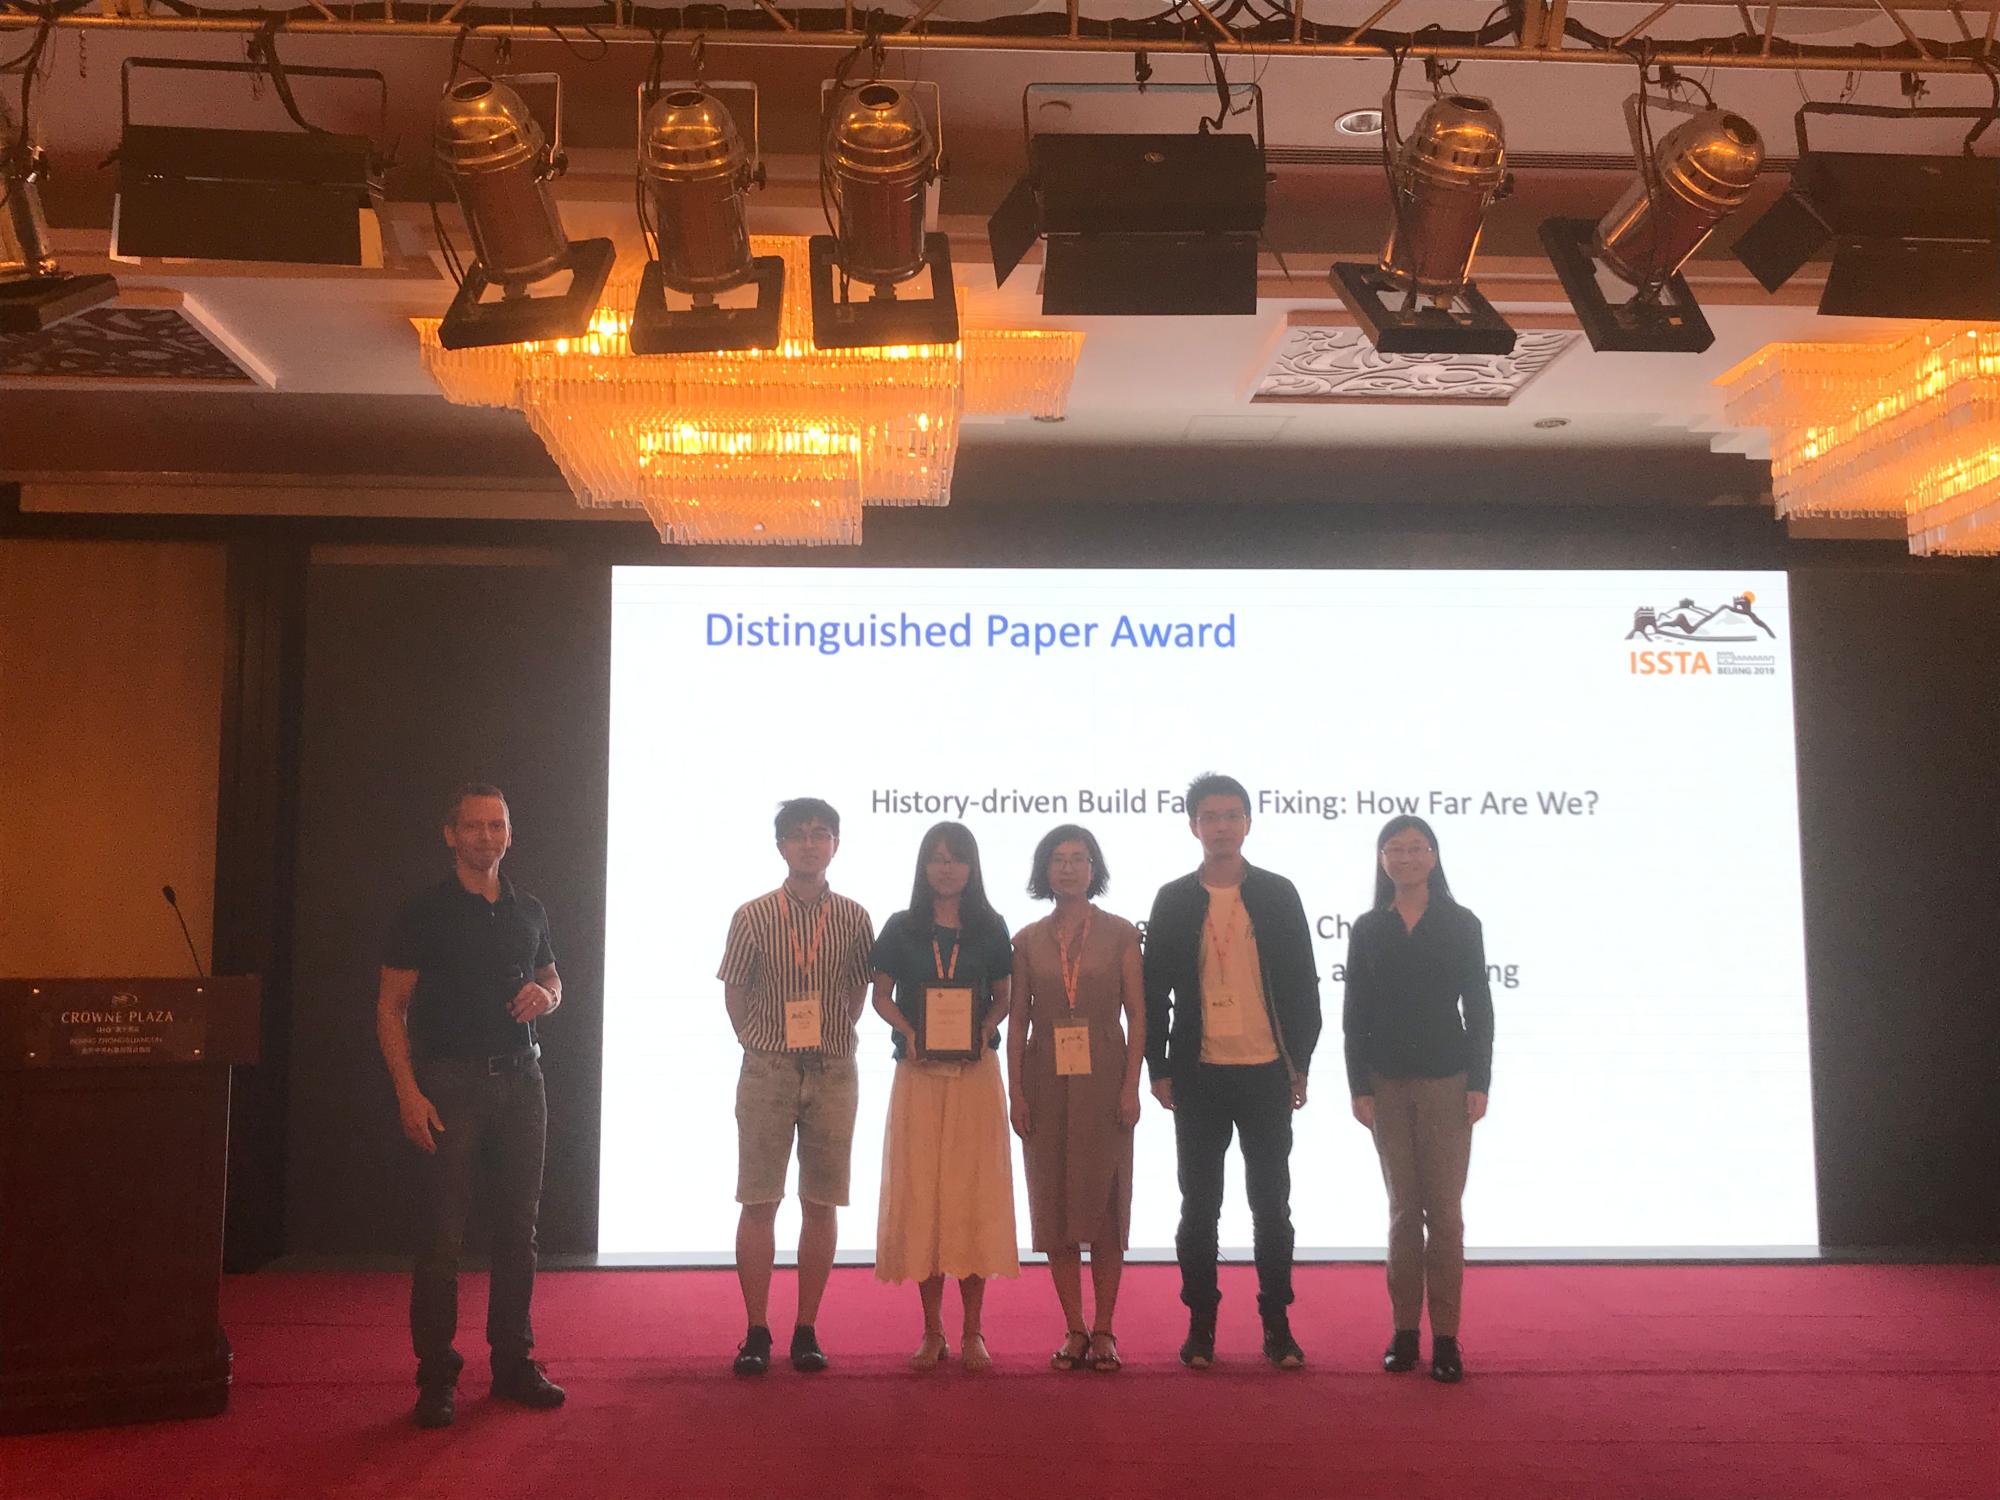 软件工程研究所研究团队获ISSTA 2019杰出论文奖北京大学计算机学院